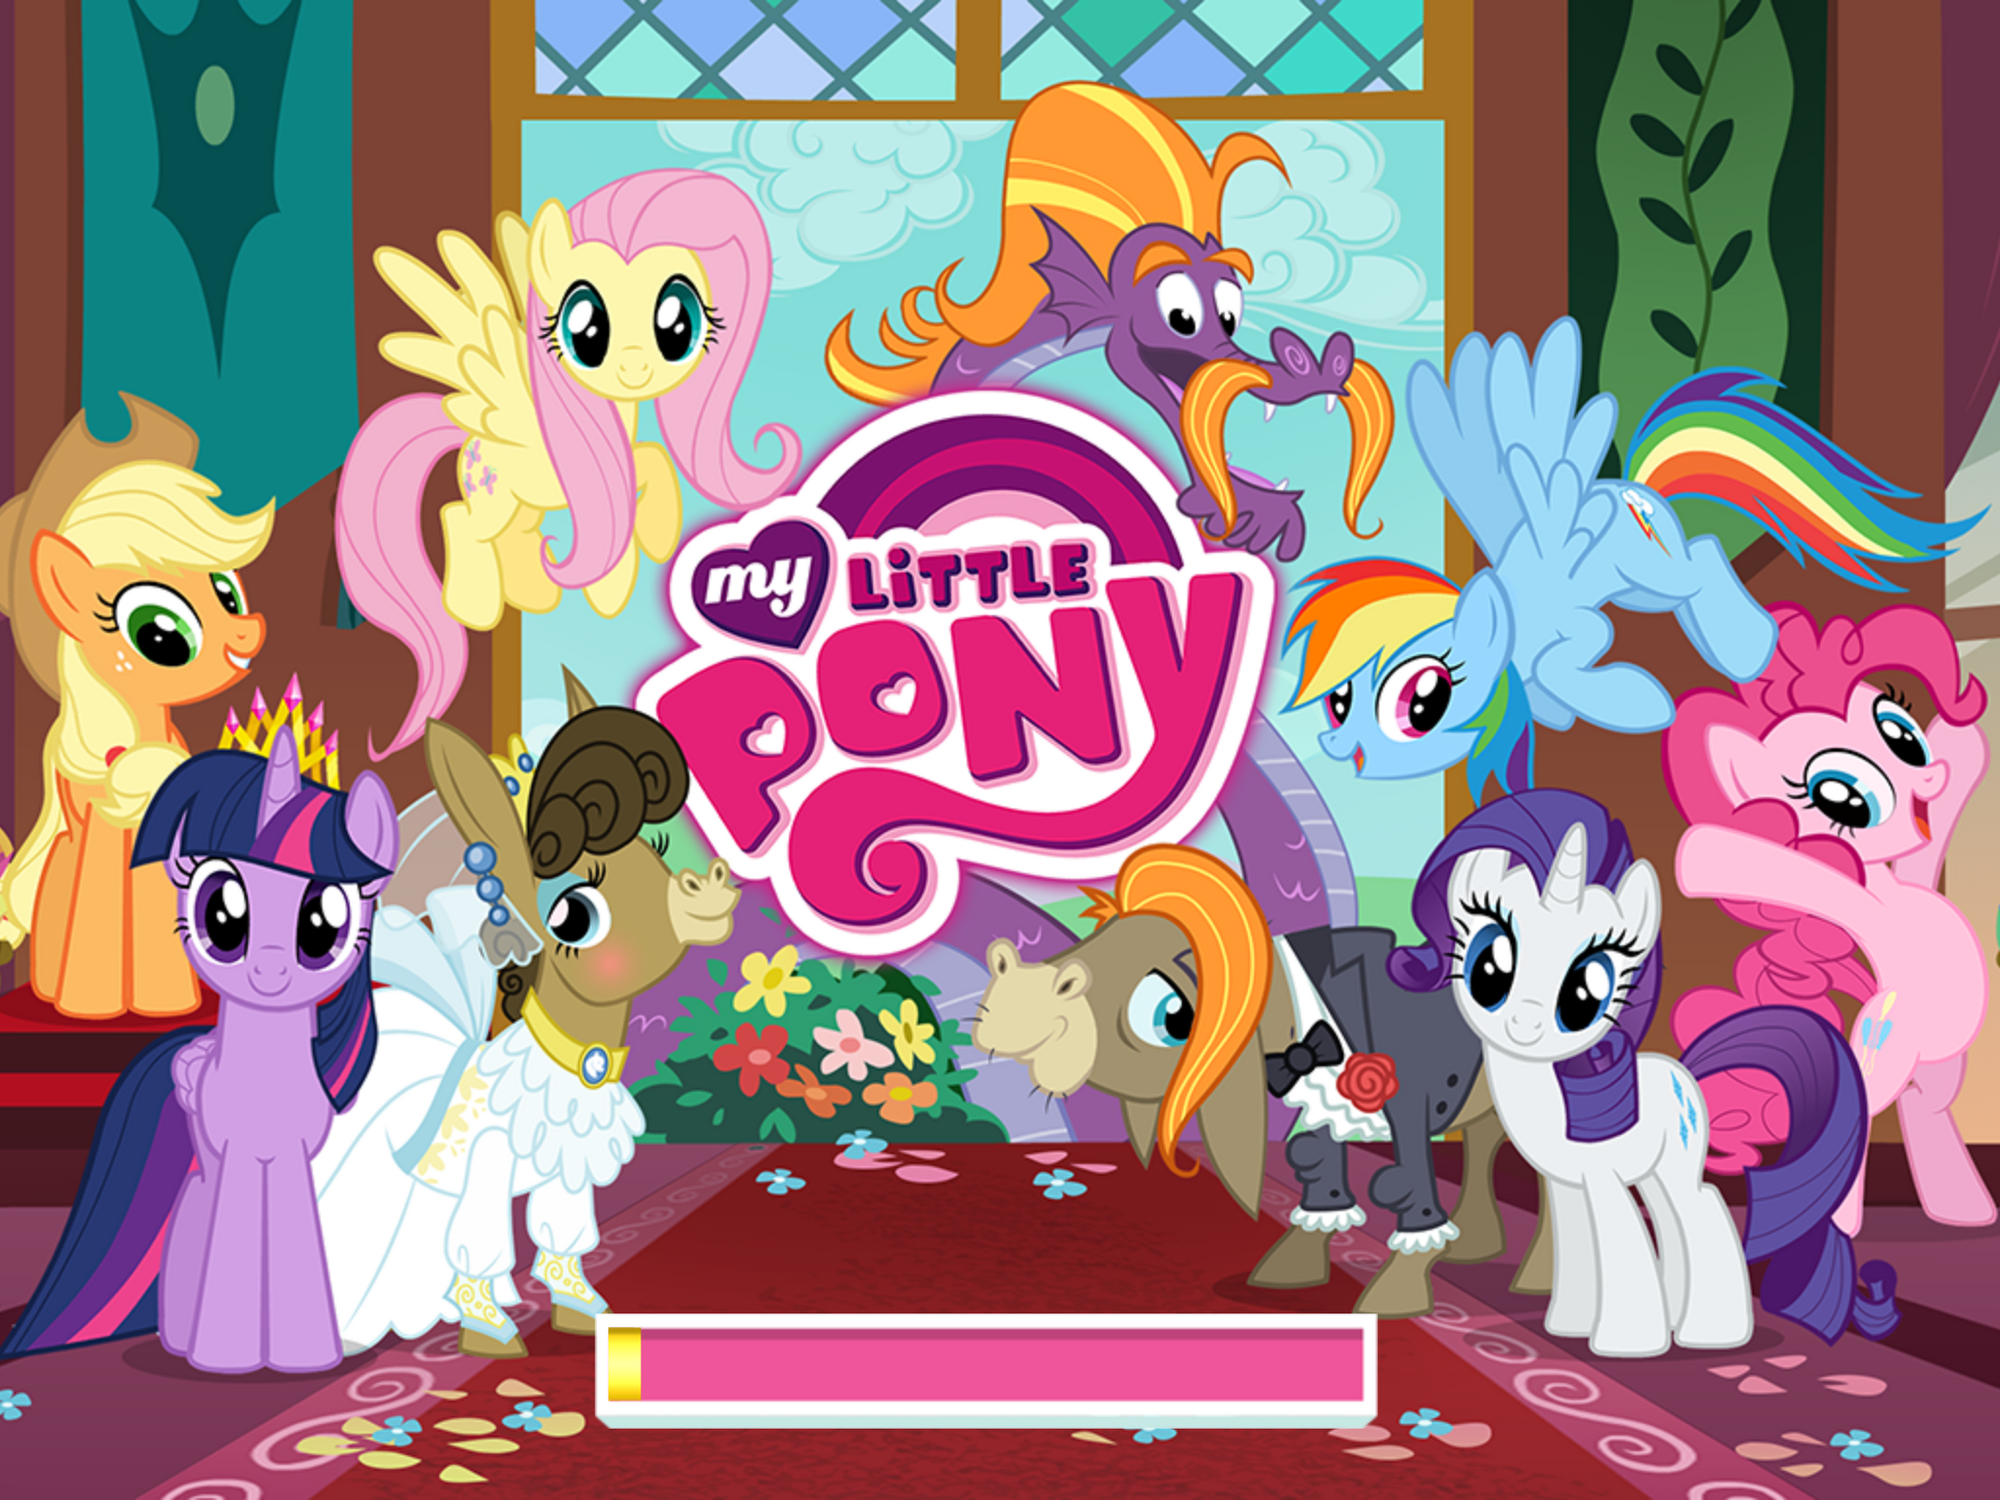 Игры май литл играть. My little Pony игра. Игра MLP Gameloft. My little Pony Friendship is Magic игра. Игра my little Pony от Gameloft.